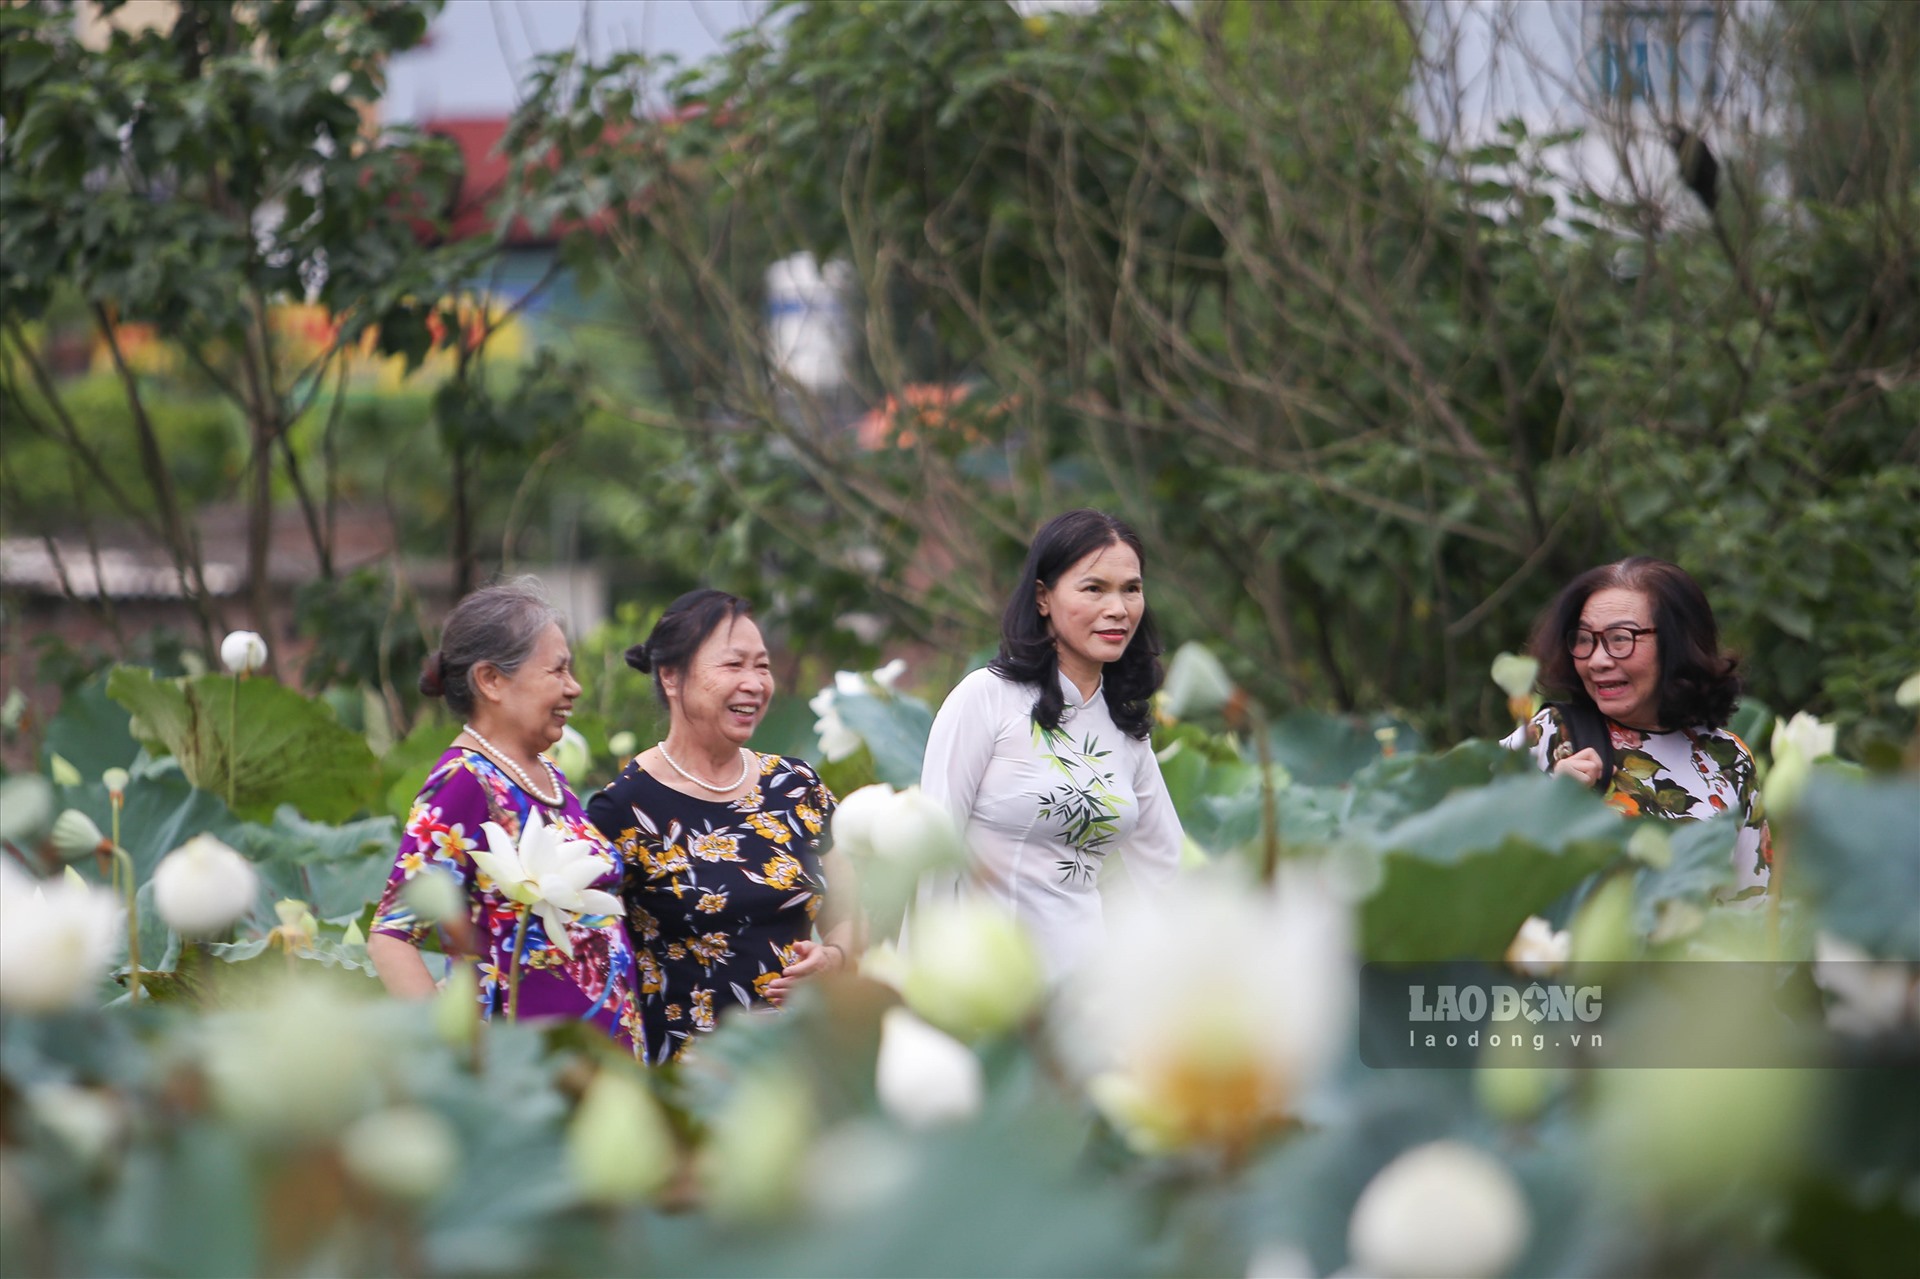 Đầm sen trắng Hà Nội là một trong những địa điểm du lịch tuyệt vời và phổ biến nhất trong thành phố. Hãy đến và thuê một chiếc thuyền để thư giãn và dạo quanh bên hoa sen trắng xinh đẹp để cảm nhận vẻ đẹp của địa điểm này.